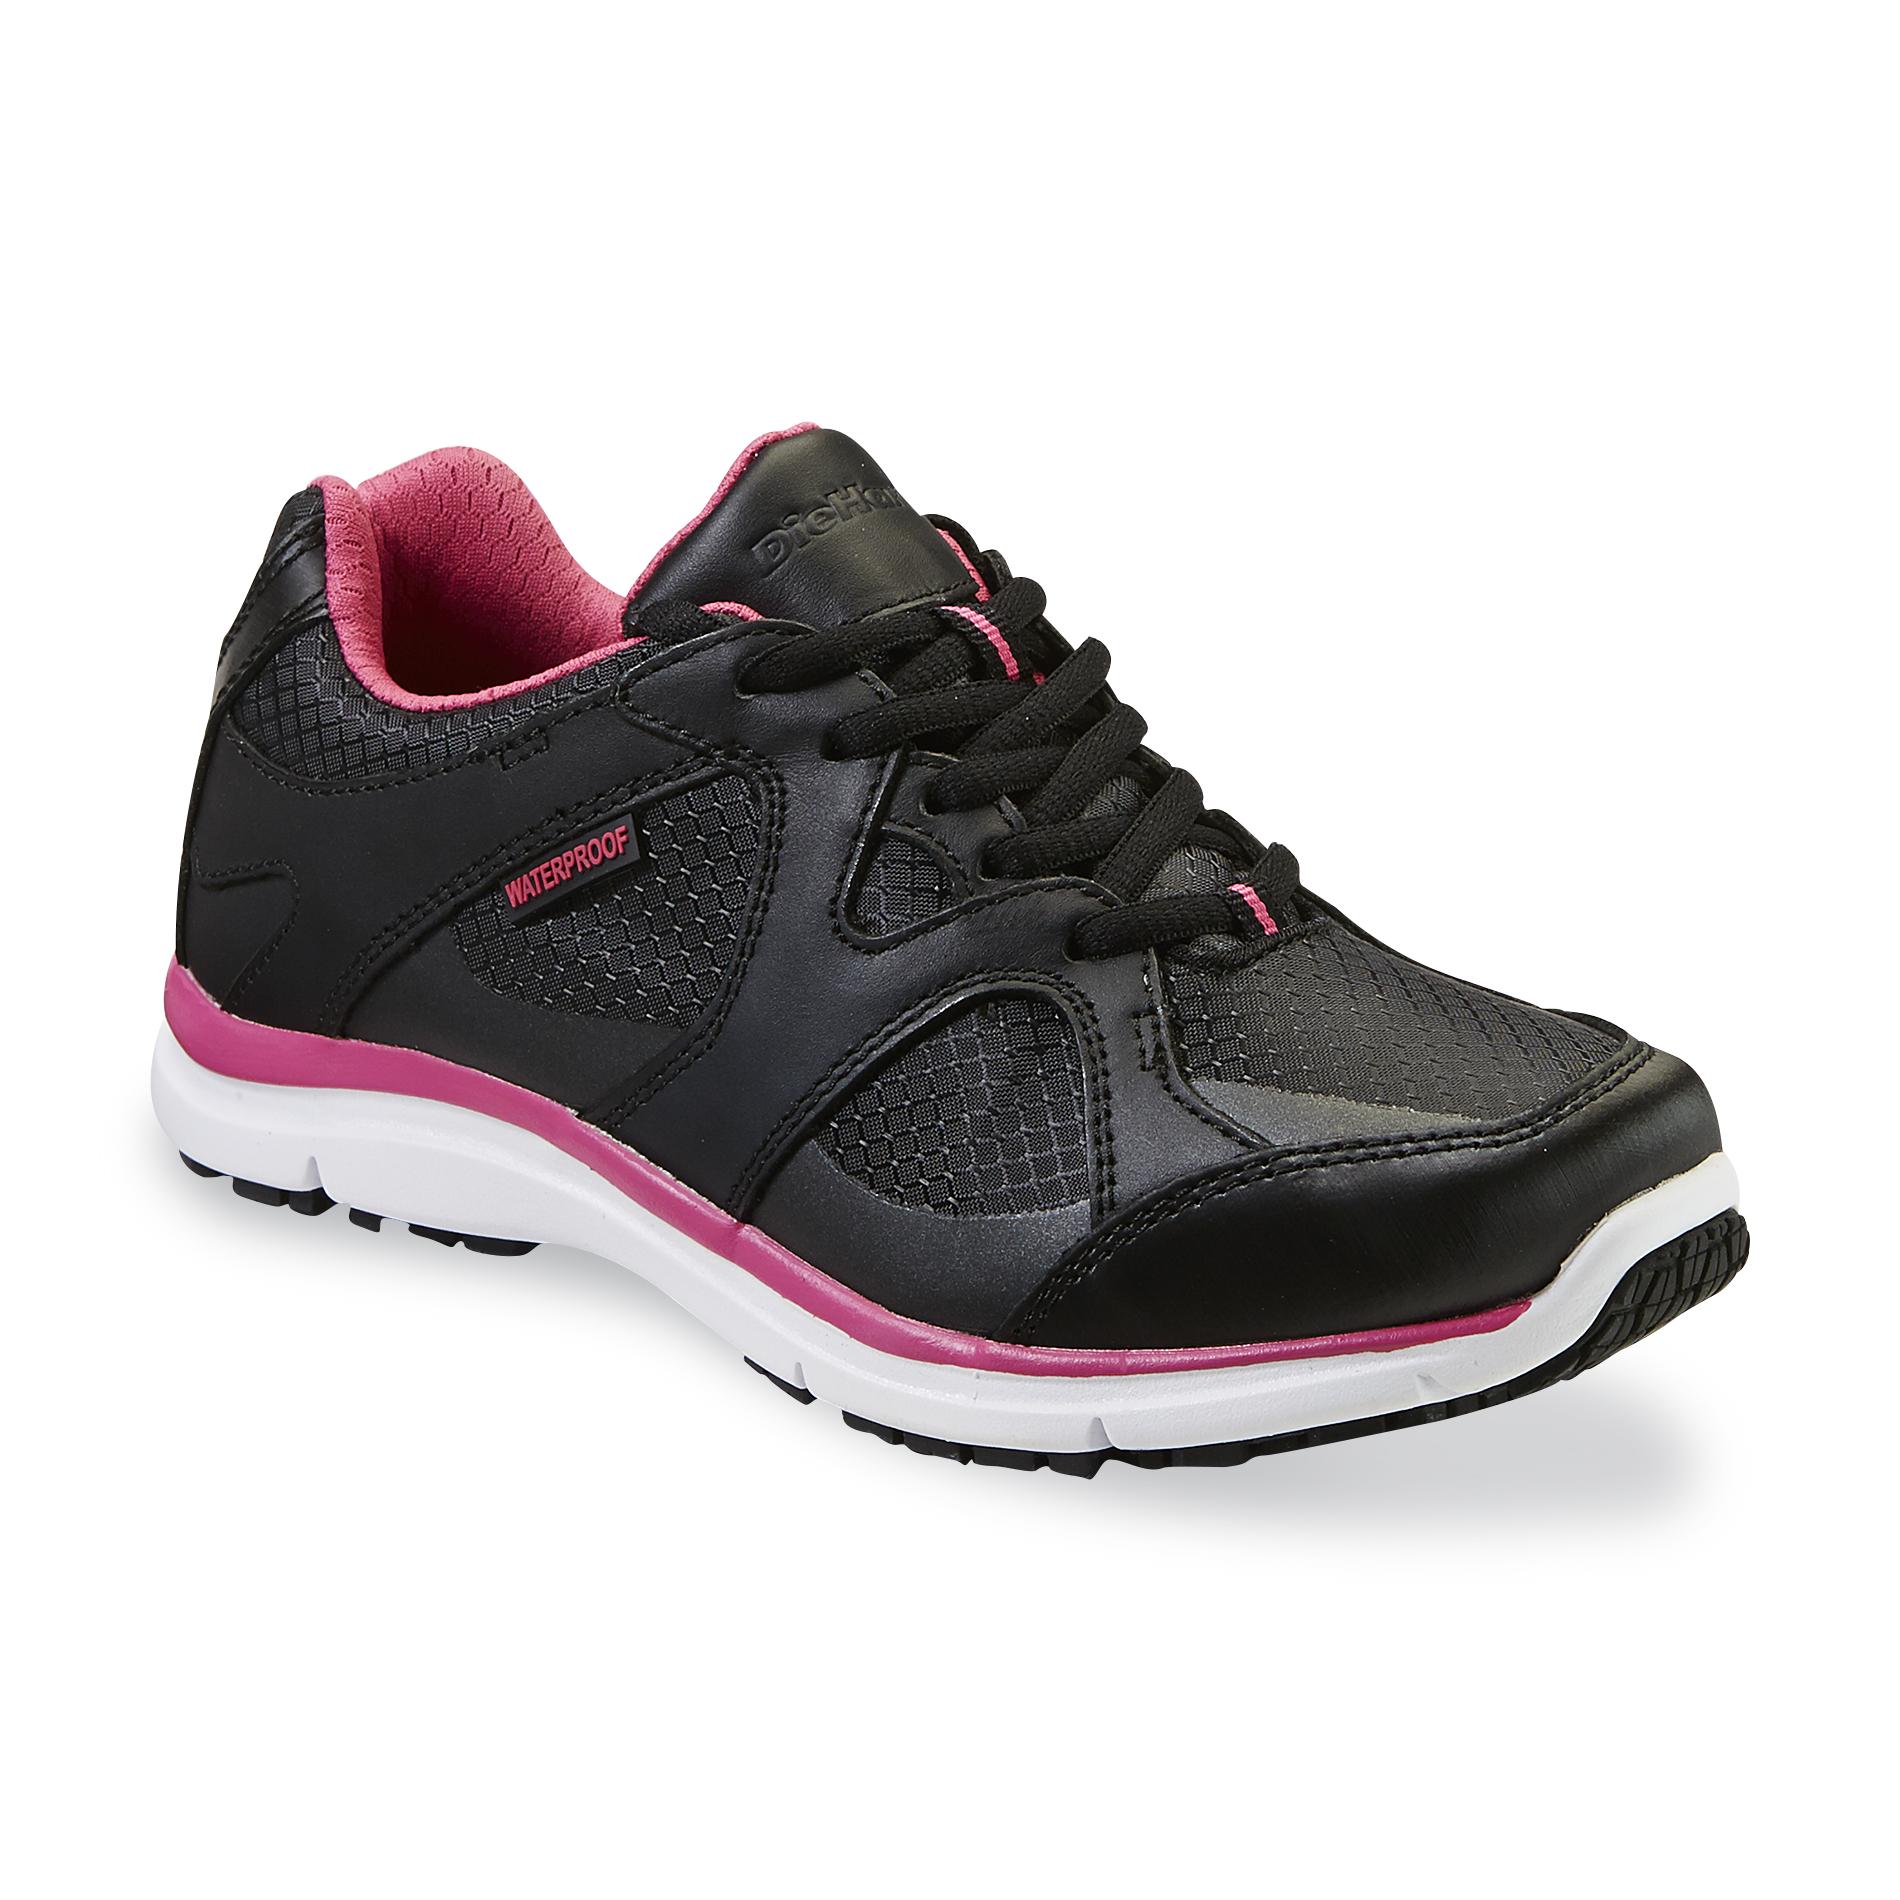 DieHard Women's Chrissie Black/Pink Waterproof Work Shoe